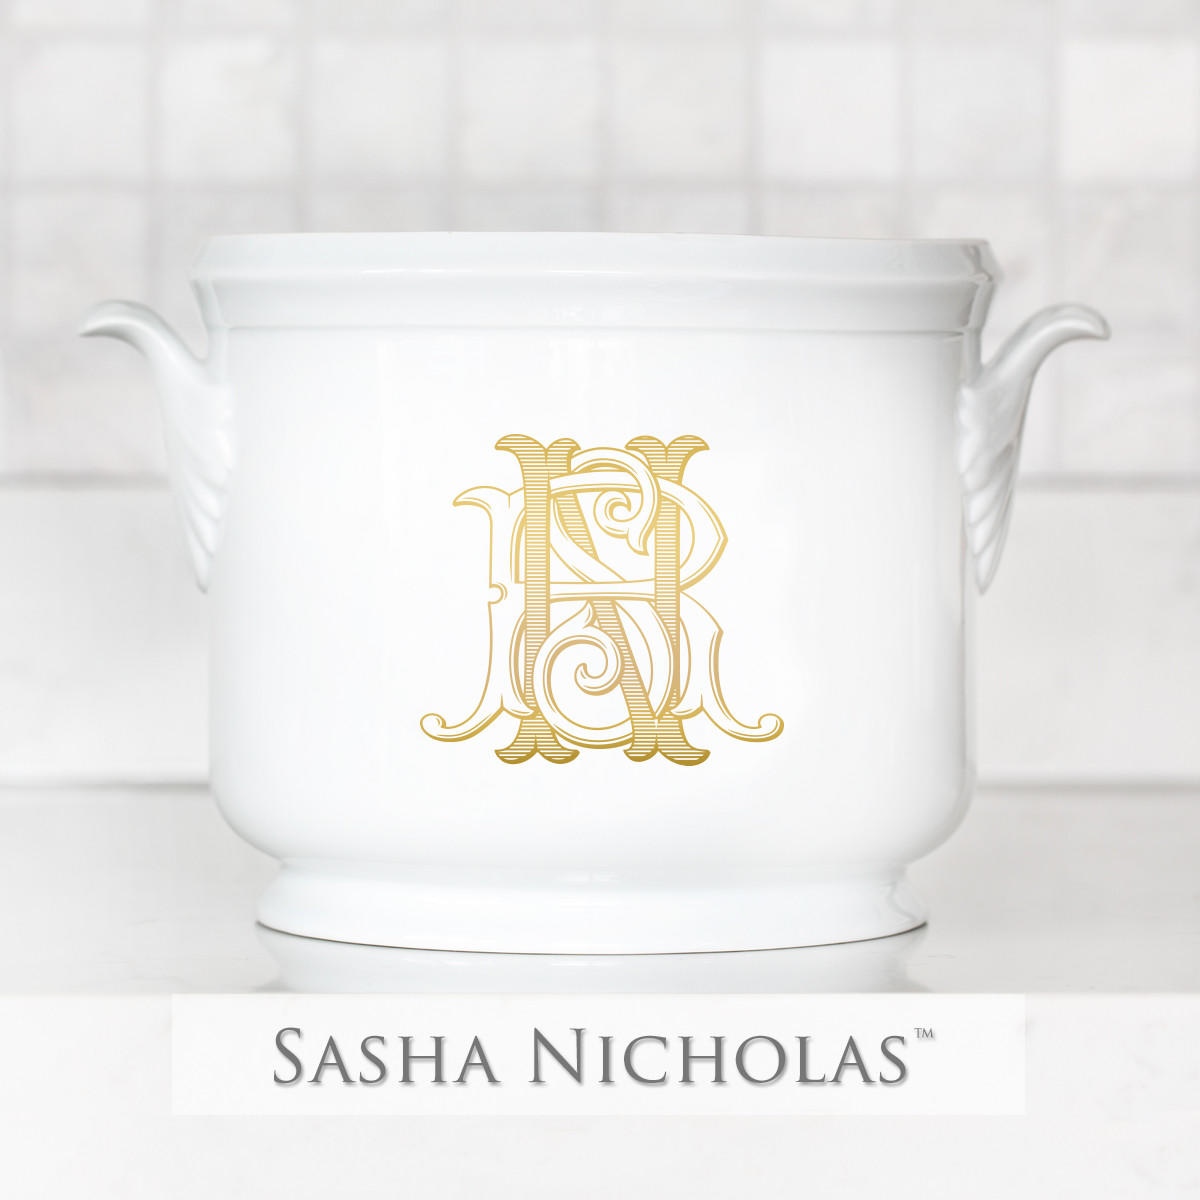 Horwitch-nadolny Champagne Bucket, Horwitch-Nadolny 3LE-1, Sasha Nicholas